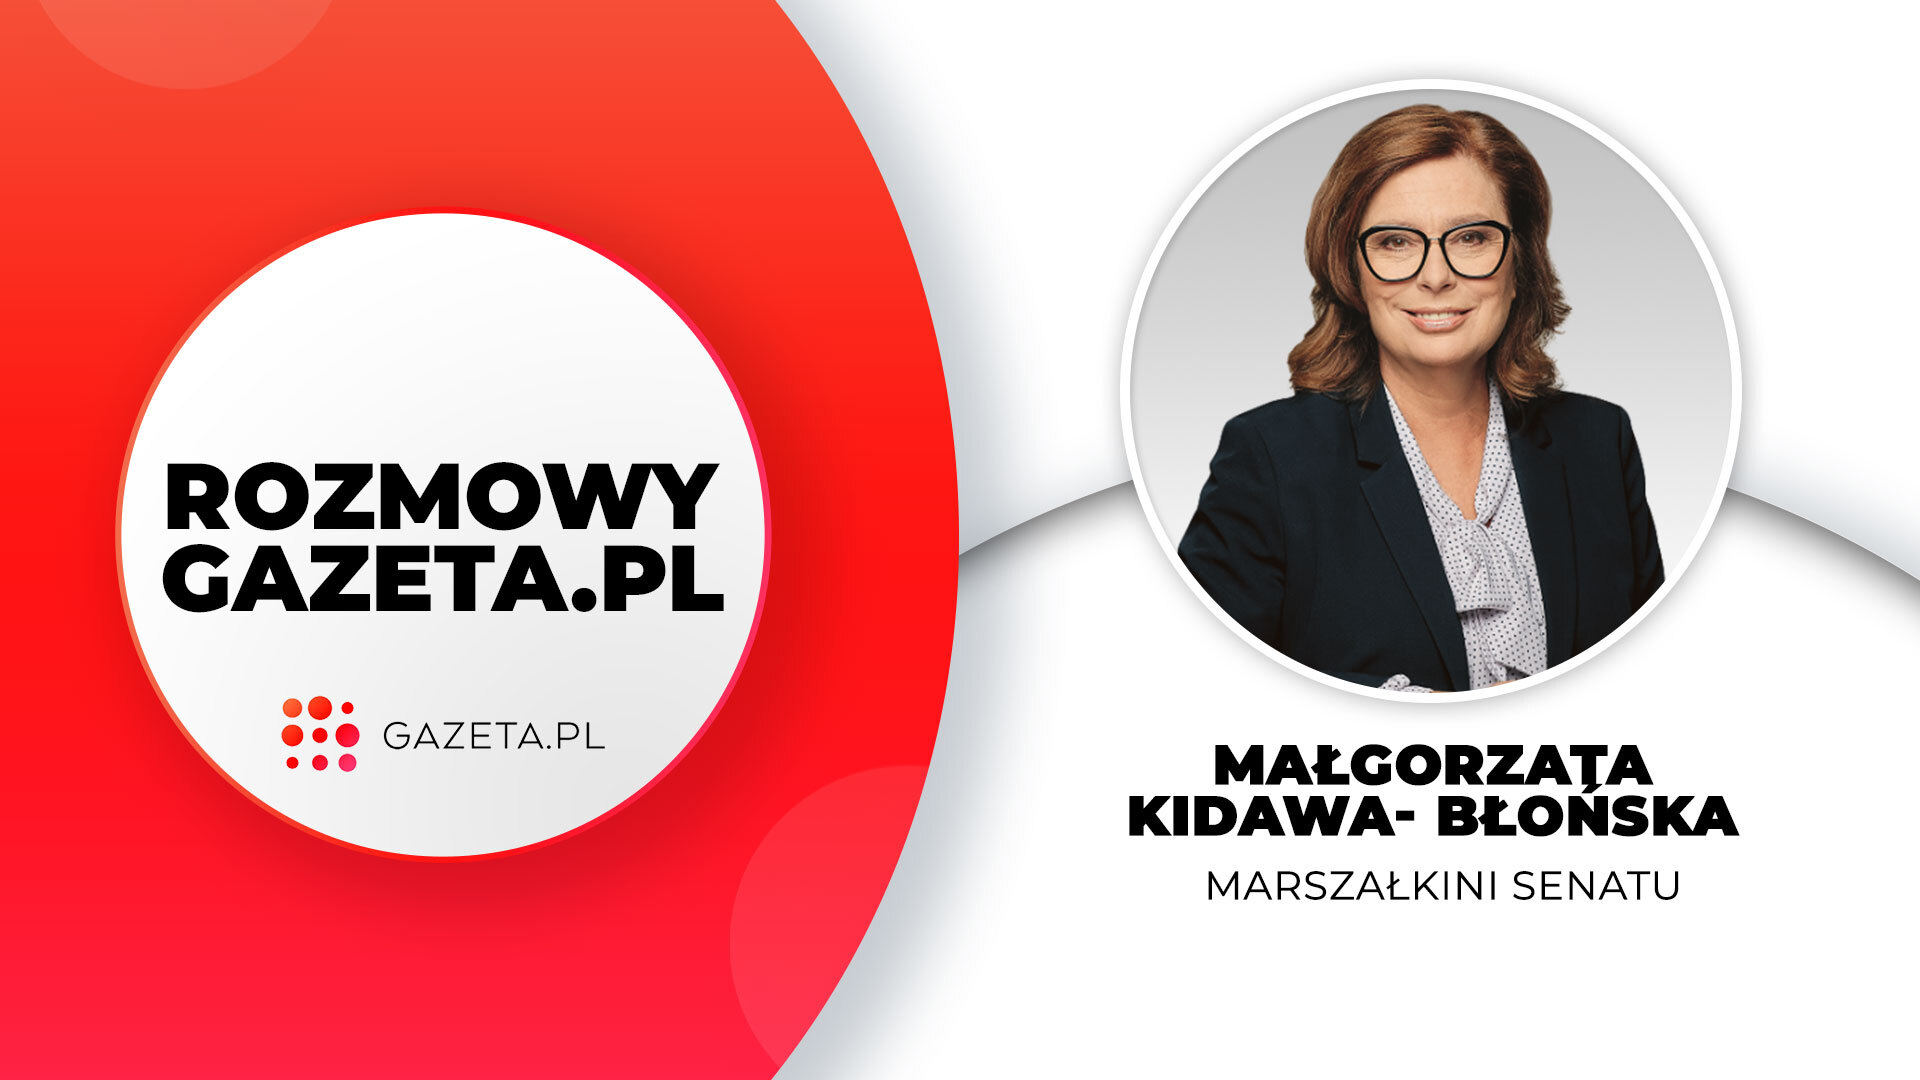 liberalizacja prawa aborcyjnego w polsce. kidawa-błońska: w tym roku powinny wyjść ustawy do prezydenta